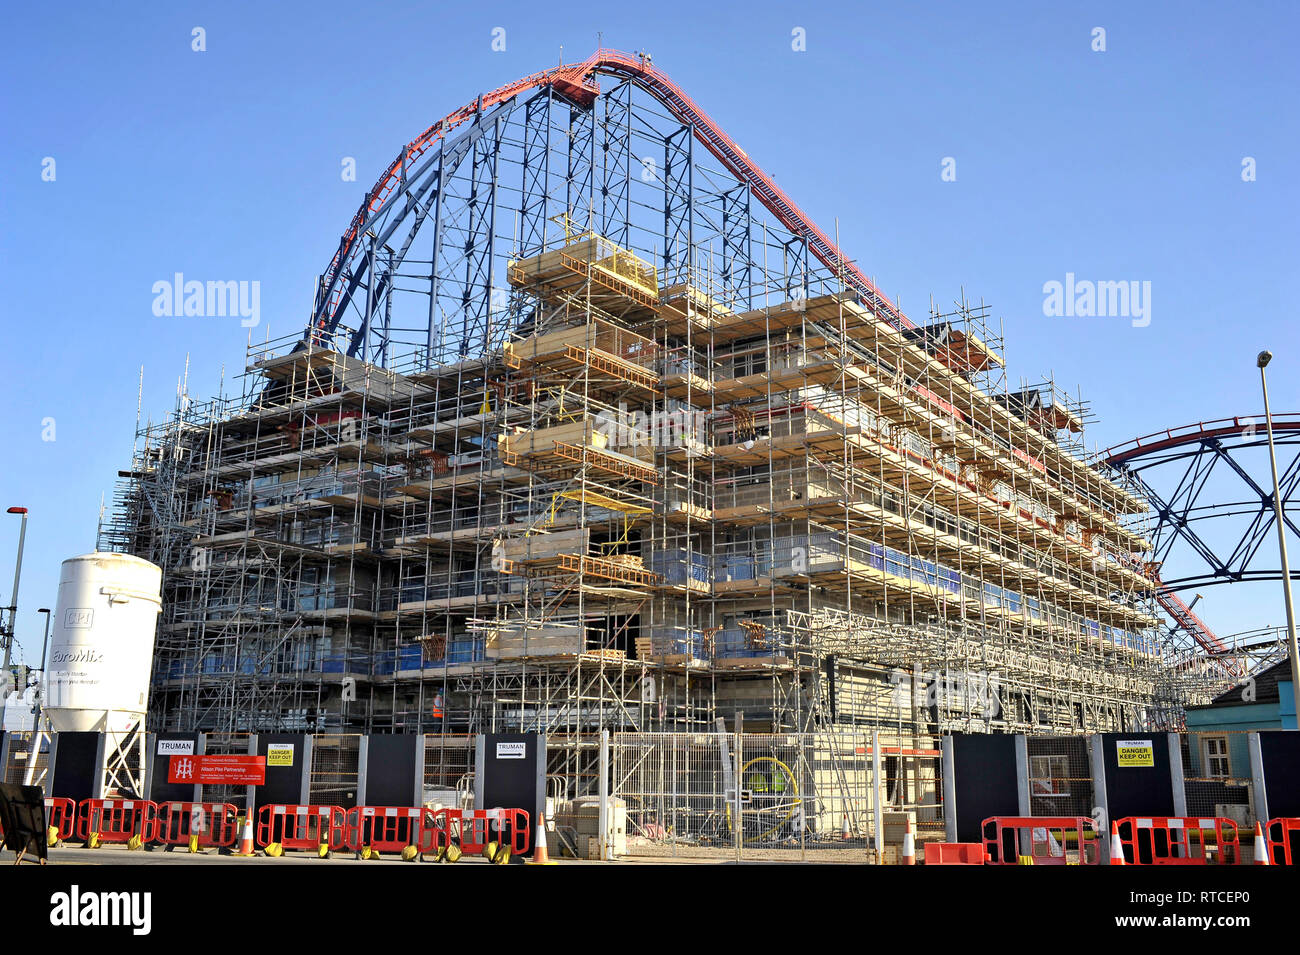 Cantiere del nuovo Boulevard Hotel nella parte anteriore del Big One roller coaster a Blackpool Pleasure Beach Parco Divertimenti,Lancashire, Regno Unito Foto Stock